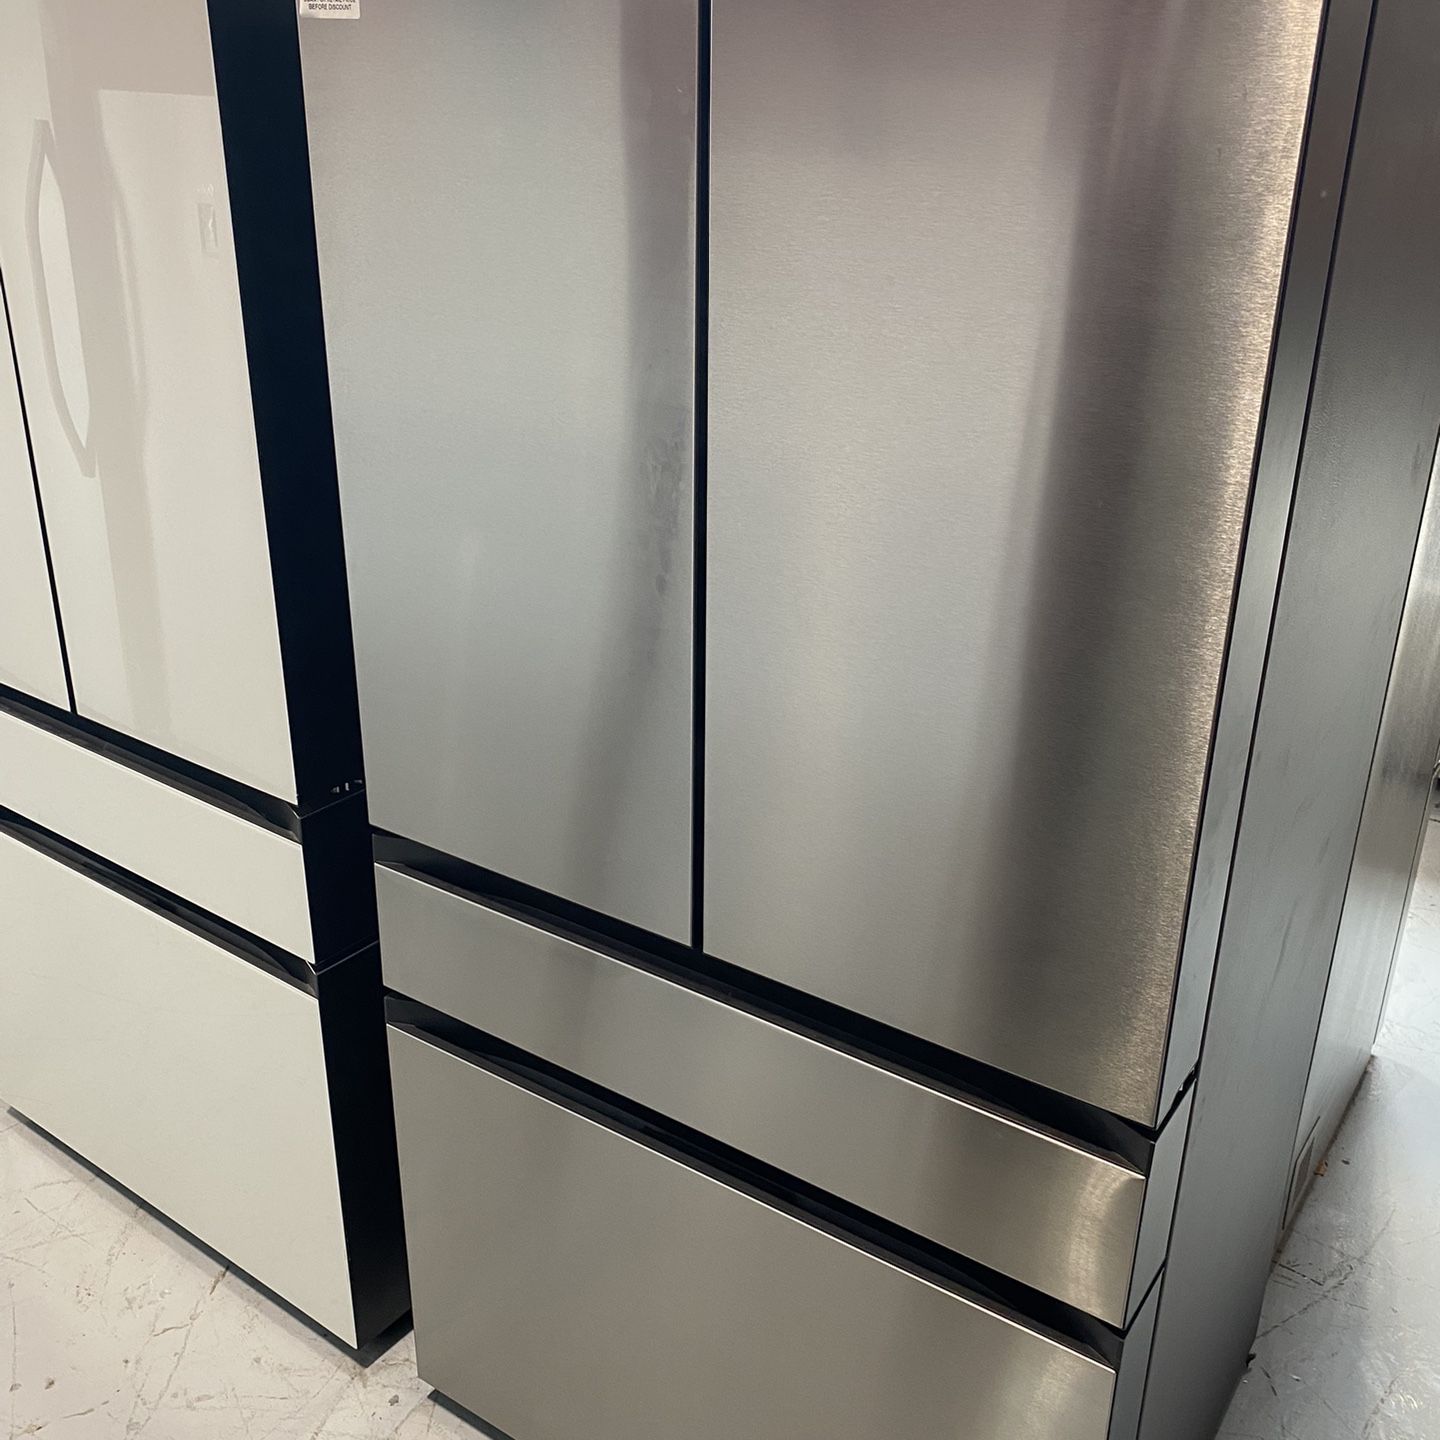 Samsung BeSpoke Stainless Steel 4-Door French Door Refrigerator - 23 Cu. Ft.